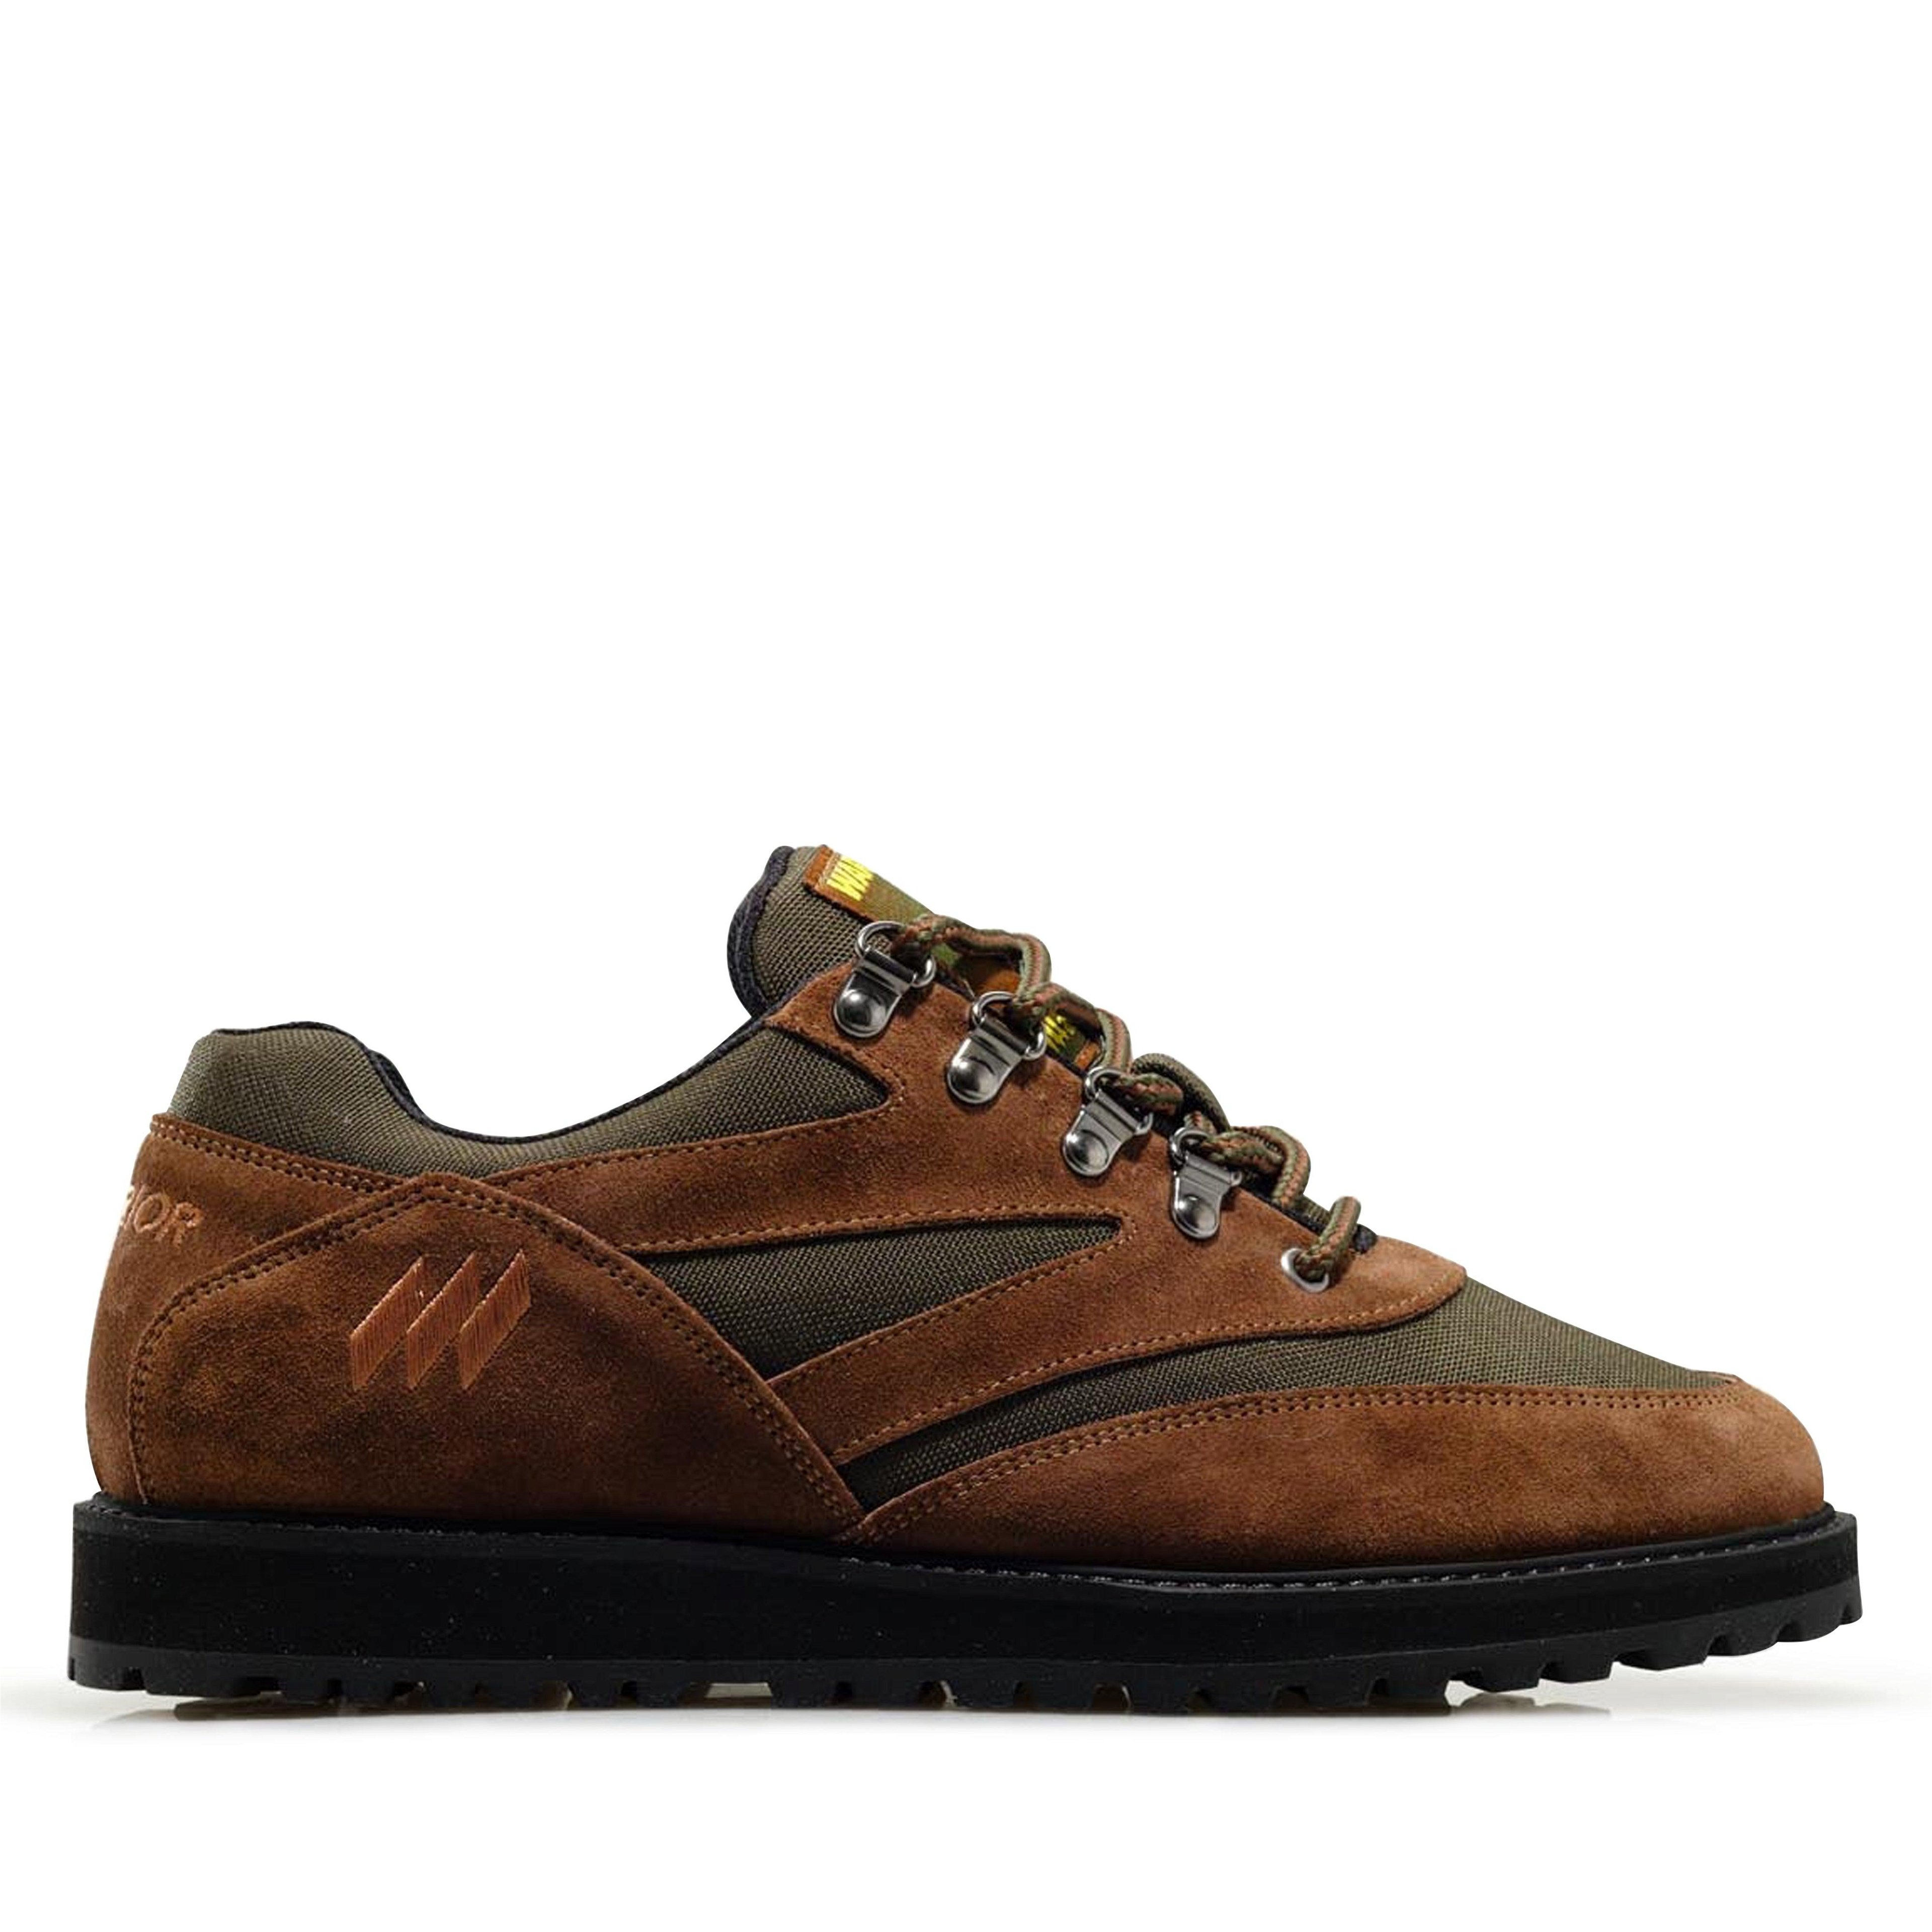 Warrior - Matterhorn Shoes - (Brown/Green) by WARRIOR SHOES